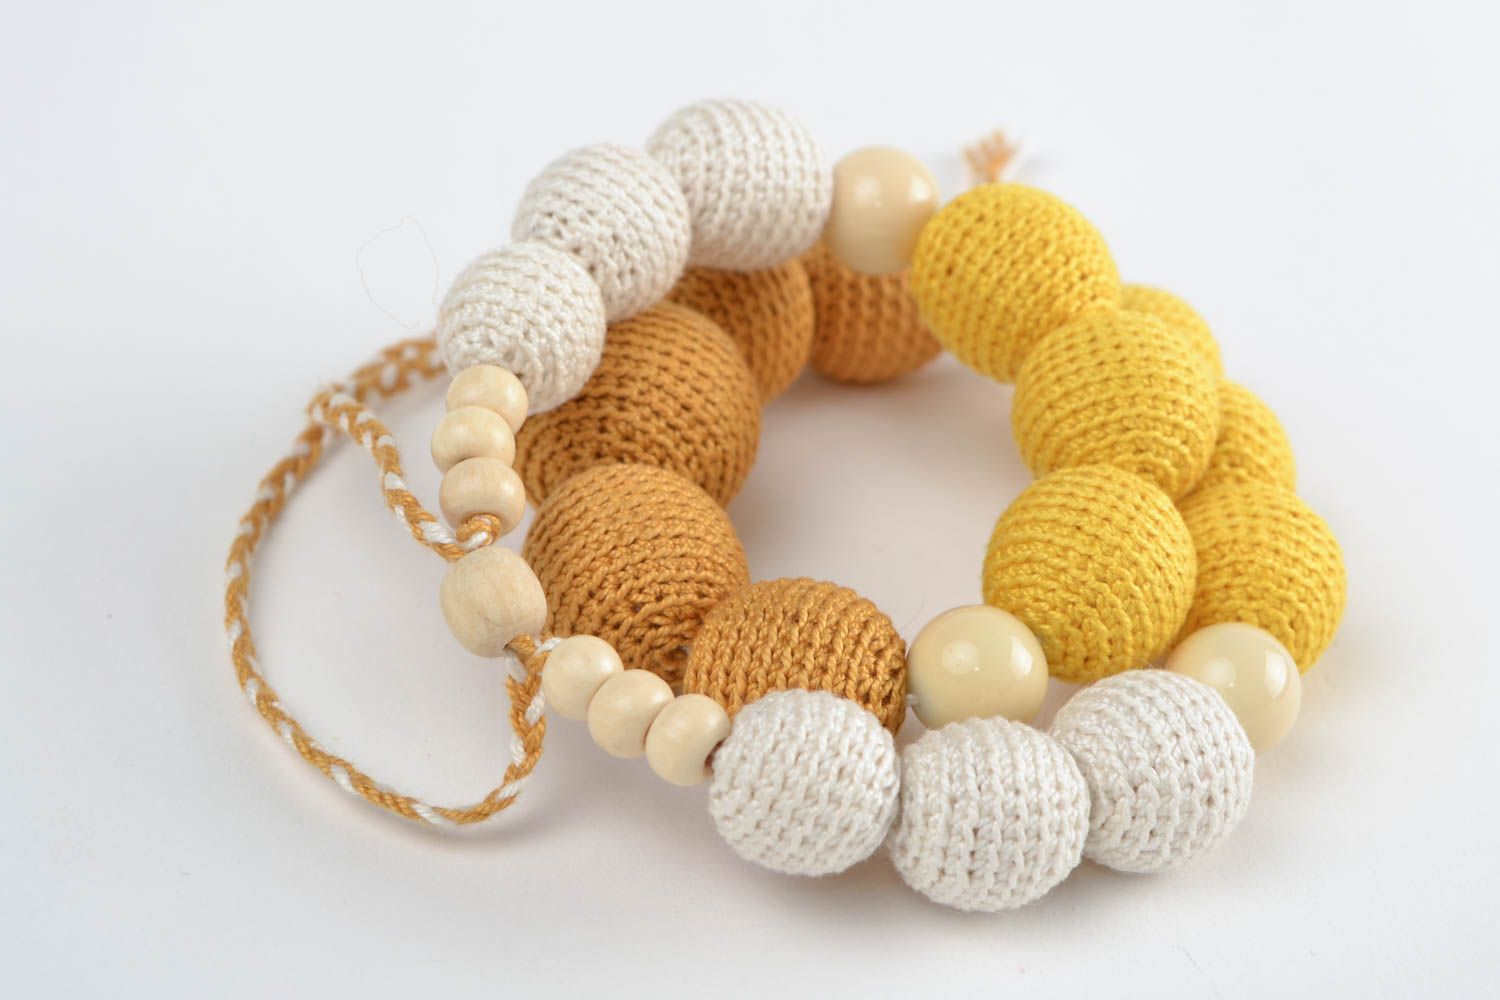 Textil Collier aus Holzperlen gelb weiß schön stilvoll Handarbeit für Frauen foto 5